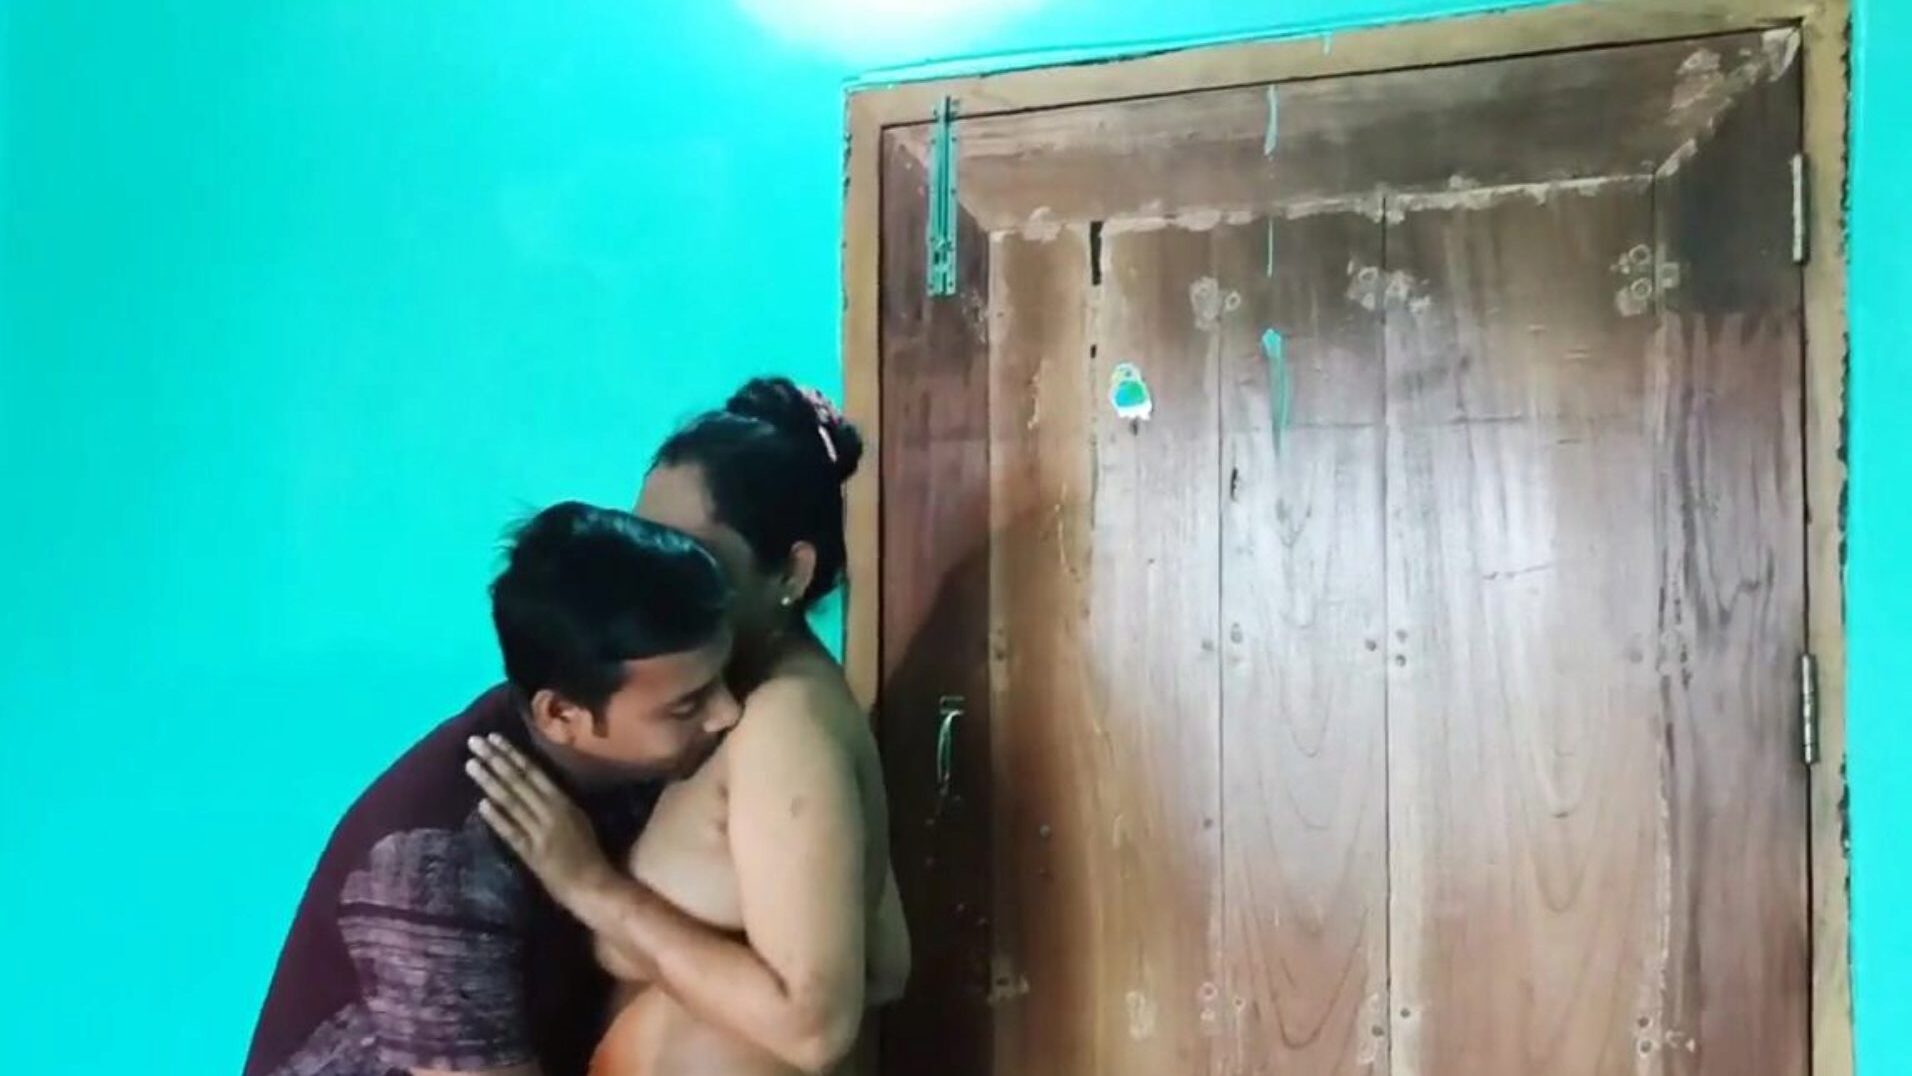 desi bengali sex video naakt, gratis aziatische porno 6c: xhamster bekijk desi bengali sex video naakt film op xhamster, de dikste hd hookup tube webpagina met tonnen gratis-voor-alle Aziatische xxn seks & anale pornofilms